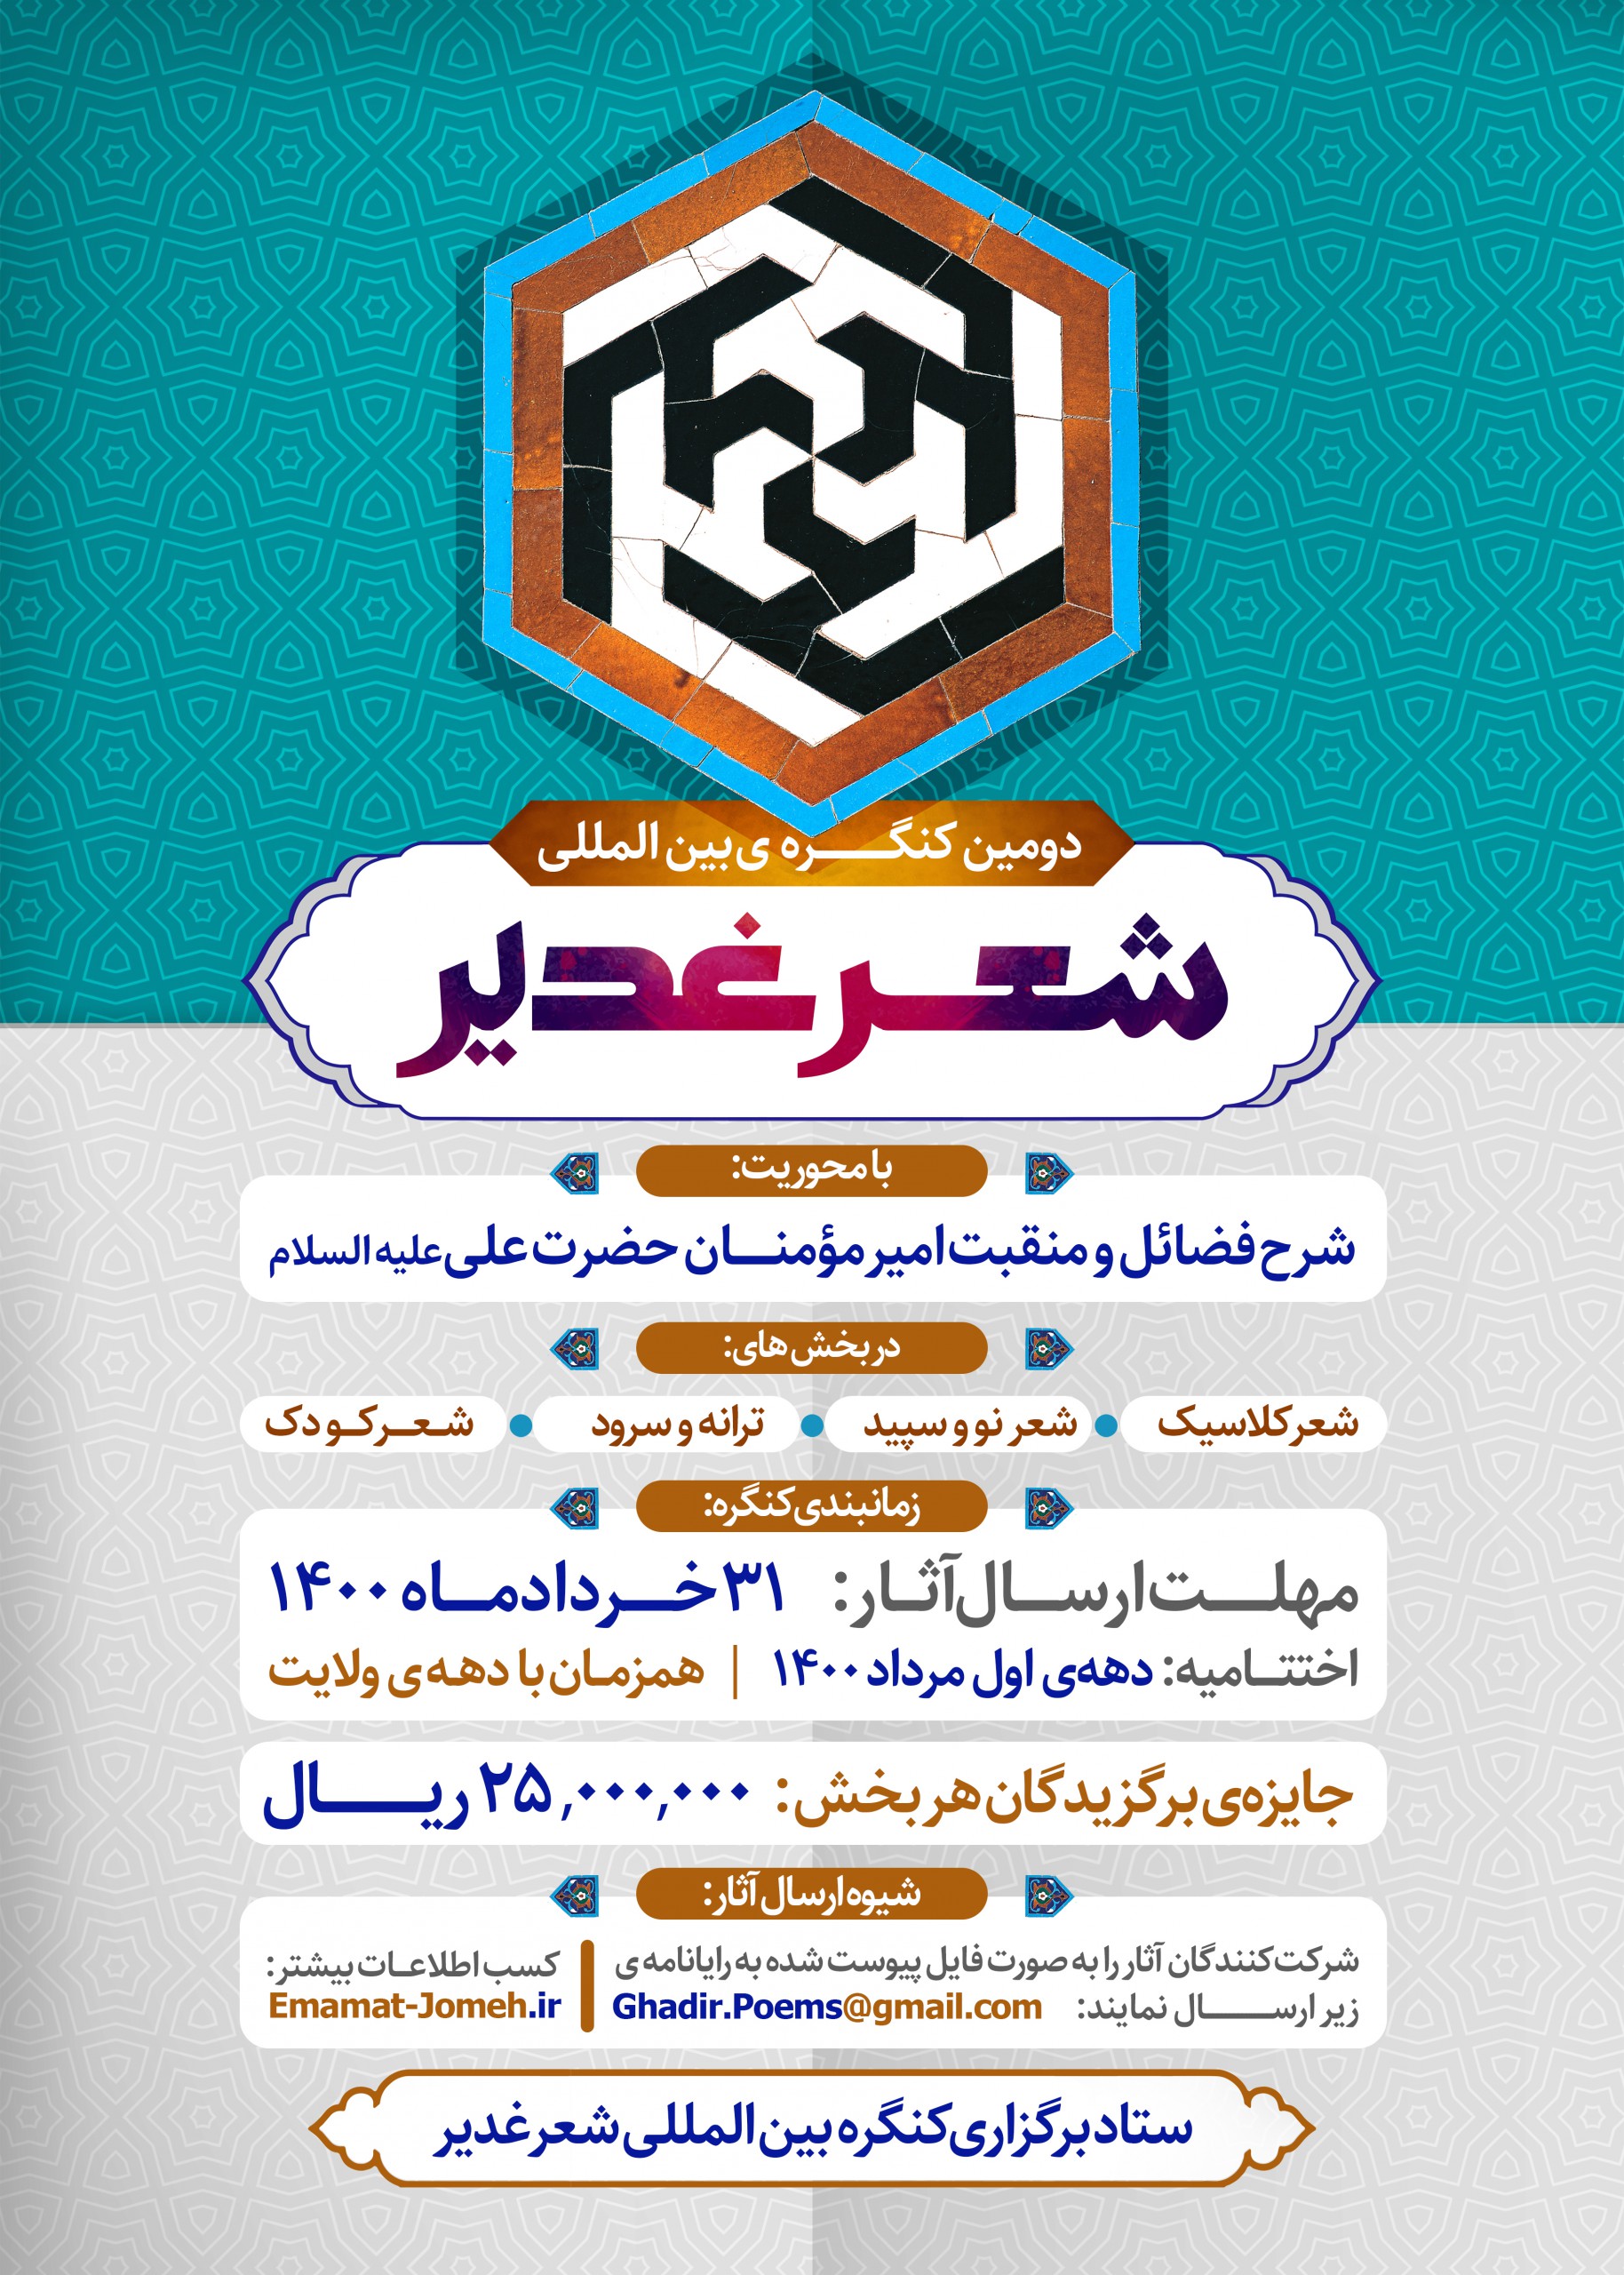 فراخوان کنگره بین المللی شعر غدیر در شیراز اعلام شد